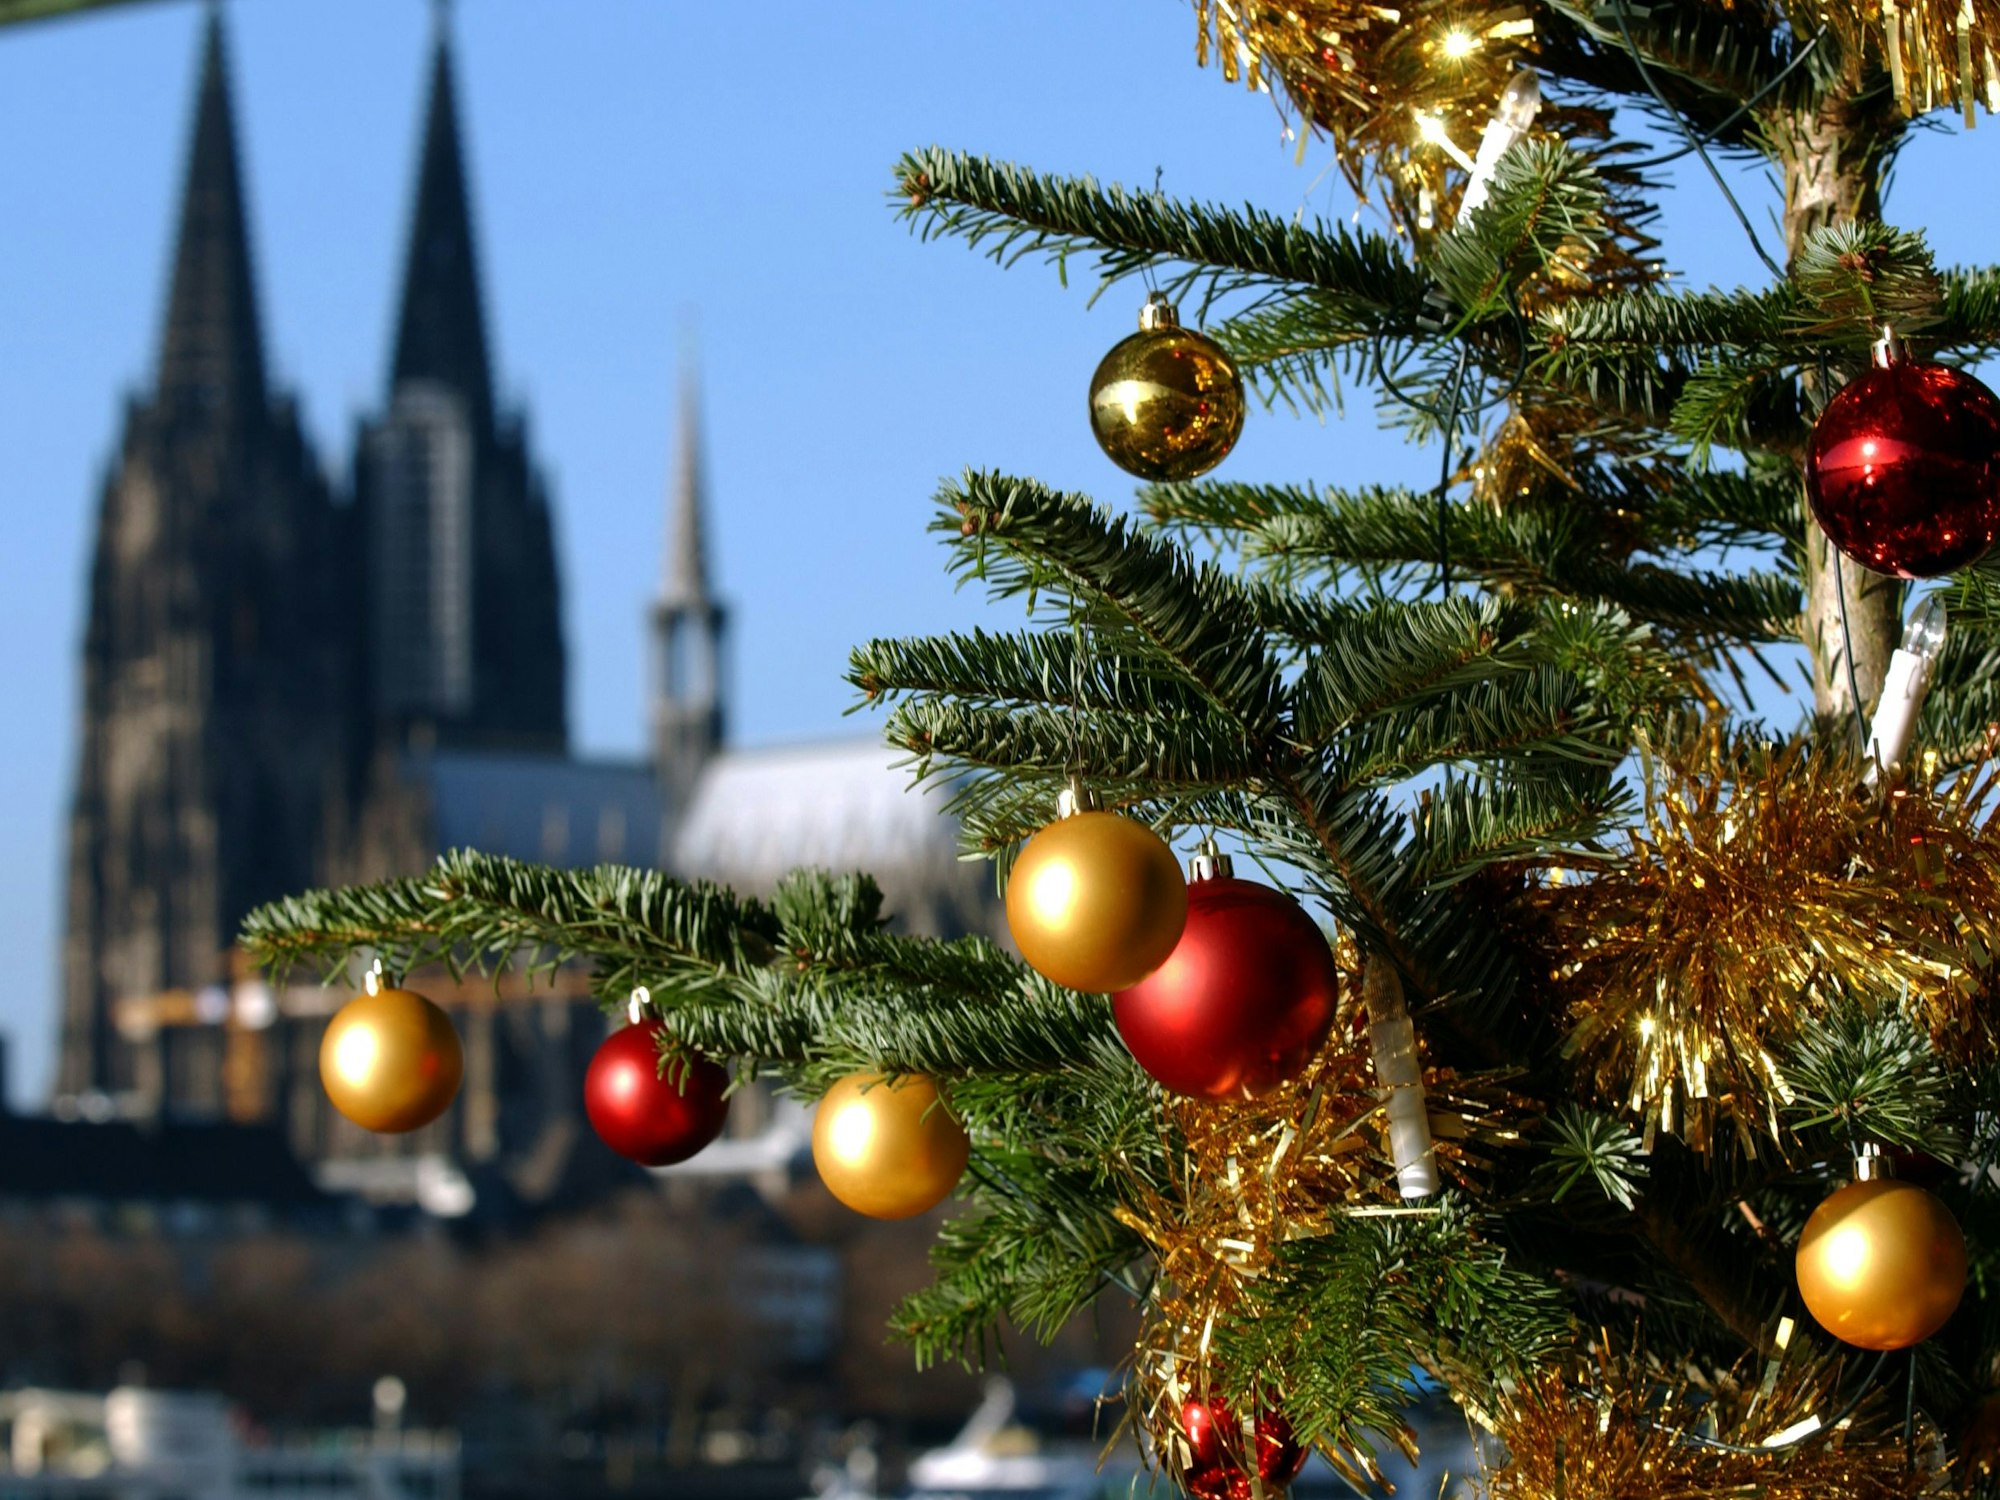 Ein Tannenbaum, geschmückt mit bunten Kugeln und goldenem Lametta, in Köln am Rheinufer